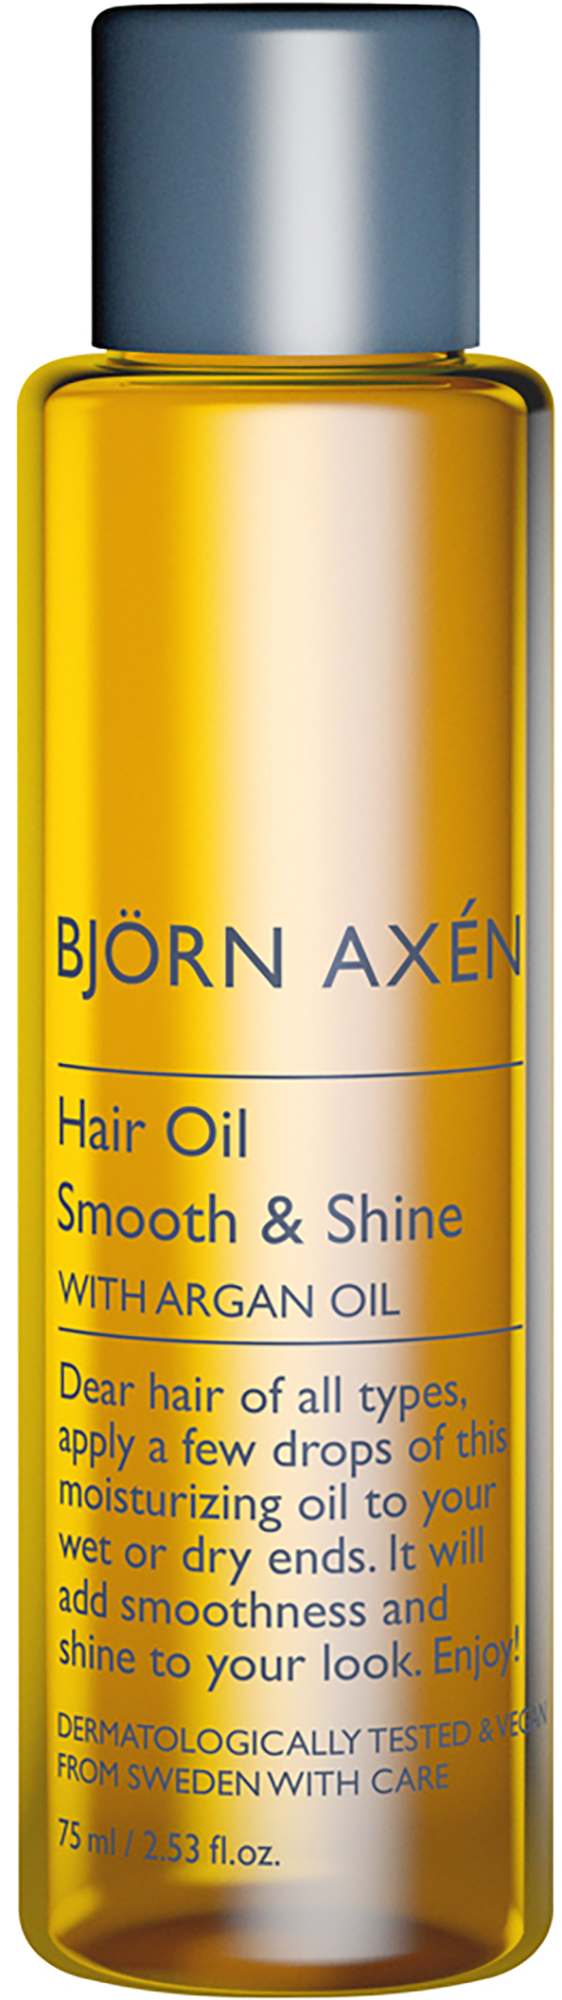 stille farvestof Tilgivende Björn Axen Björn Axén Hair Oil Smooth & Shine with Argan Oil 75 ml |  lyko.com